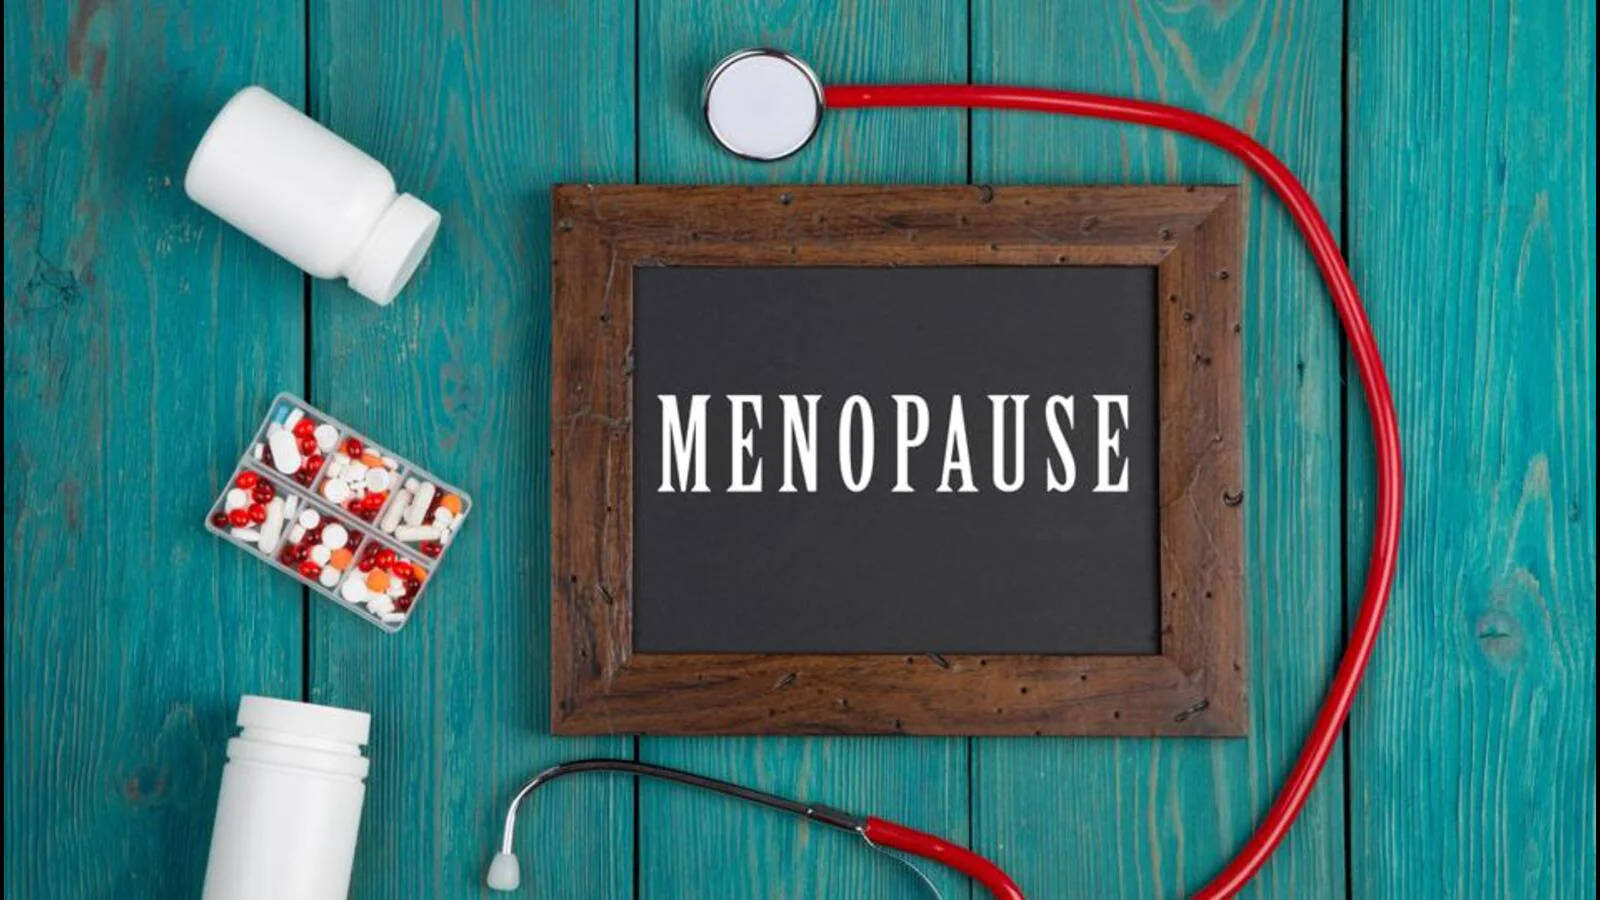 Menopause On Chalkboard